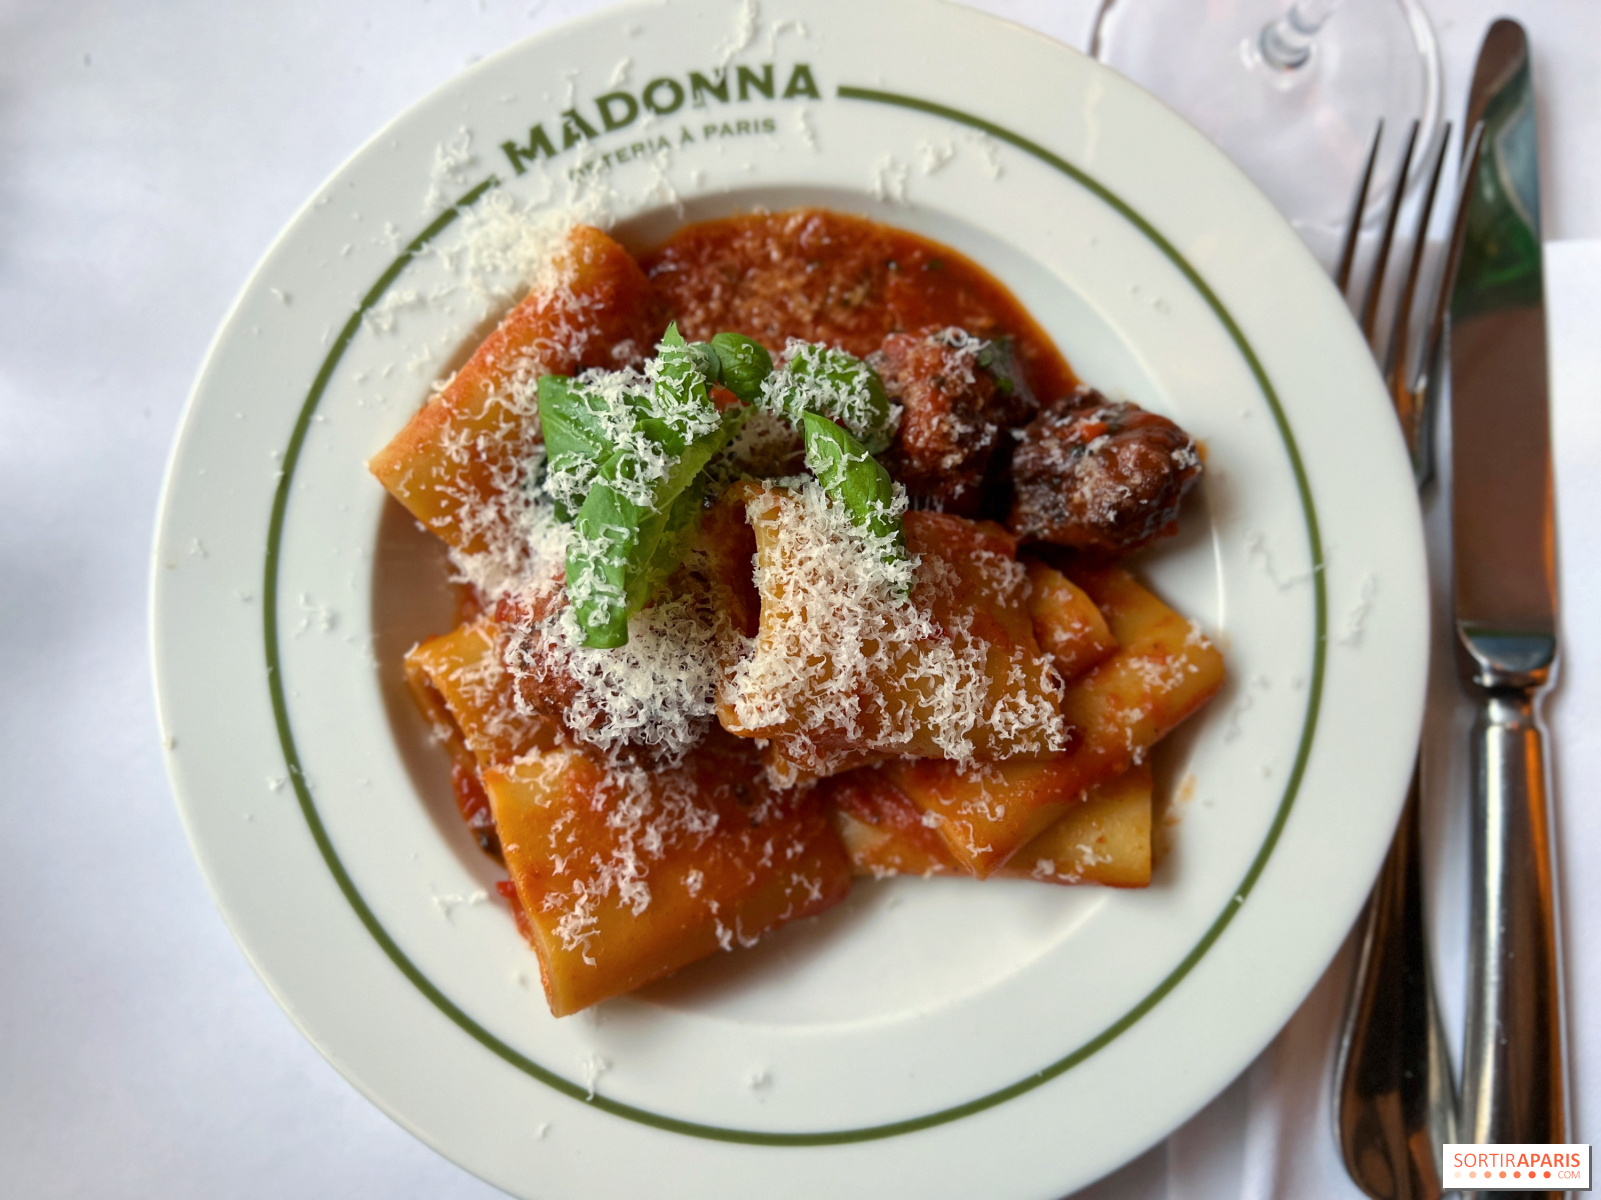 Madonna, brasserie italienne conviviale et ses plats de pasta réconfortants